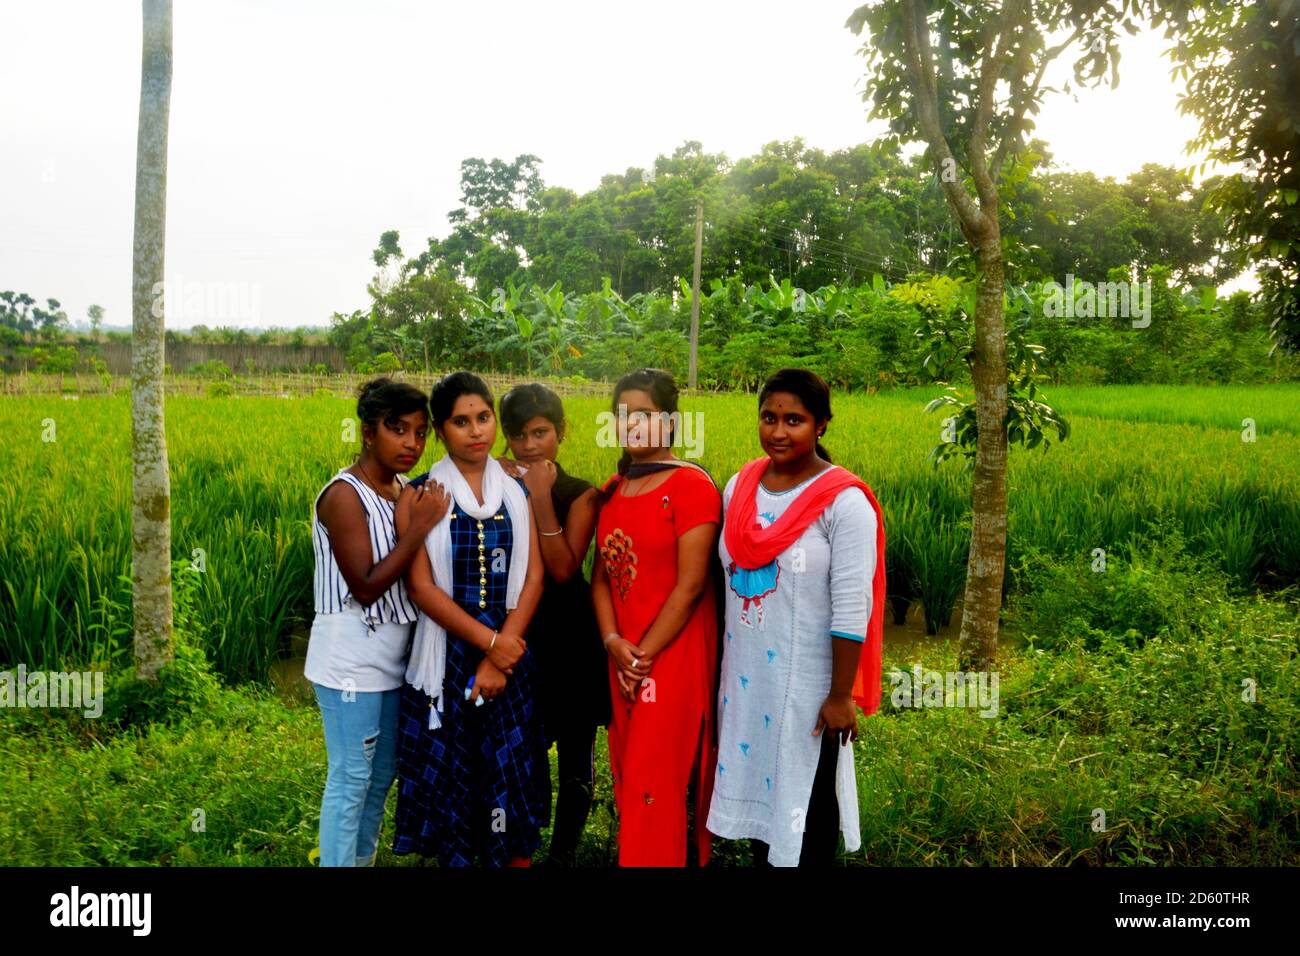 Nahaufnahme von sechs indischen Teenager-Mädchen in traditionellen bunten indischen Kleid und posiert vor einem Reisfeld, selektive Fokussierung Stockfoto